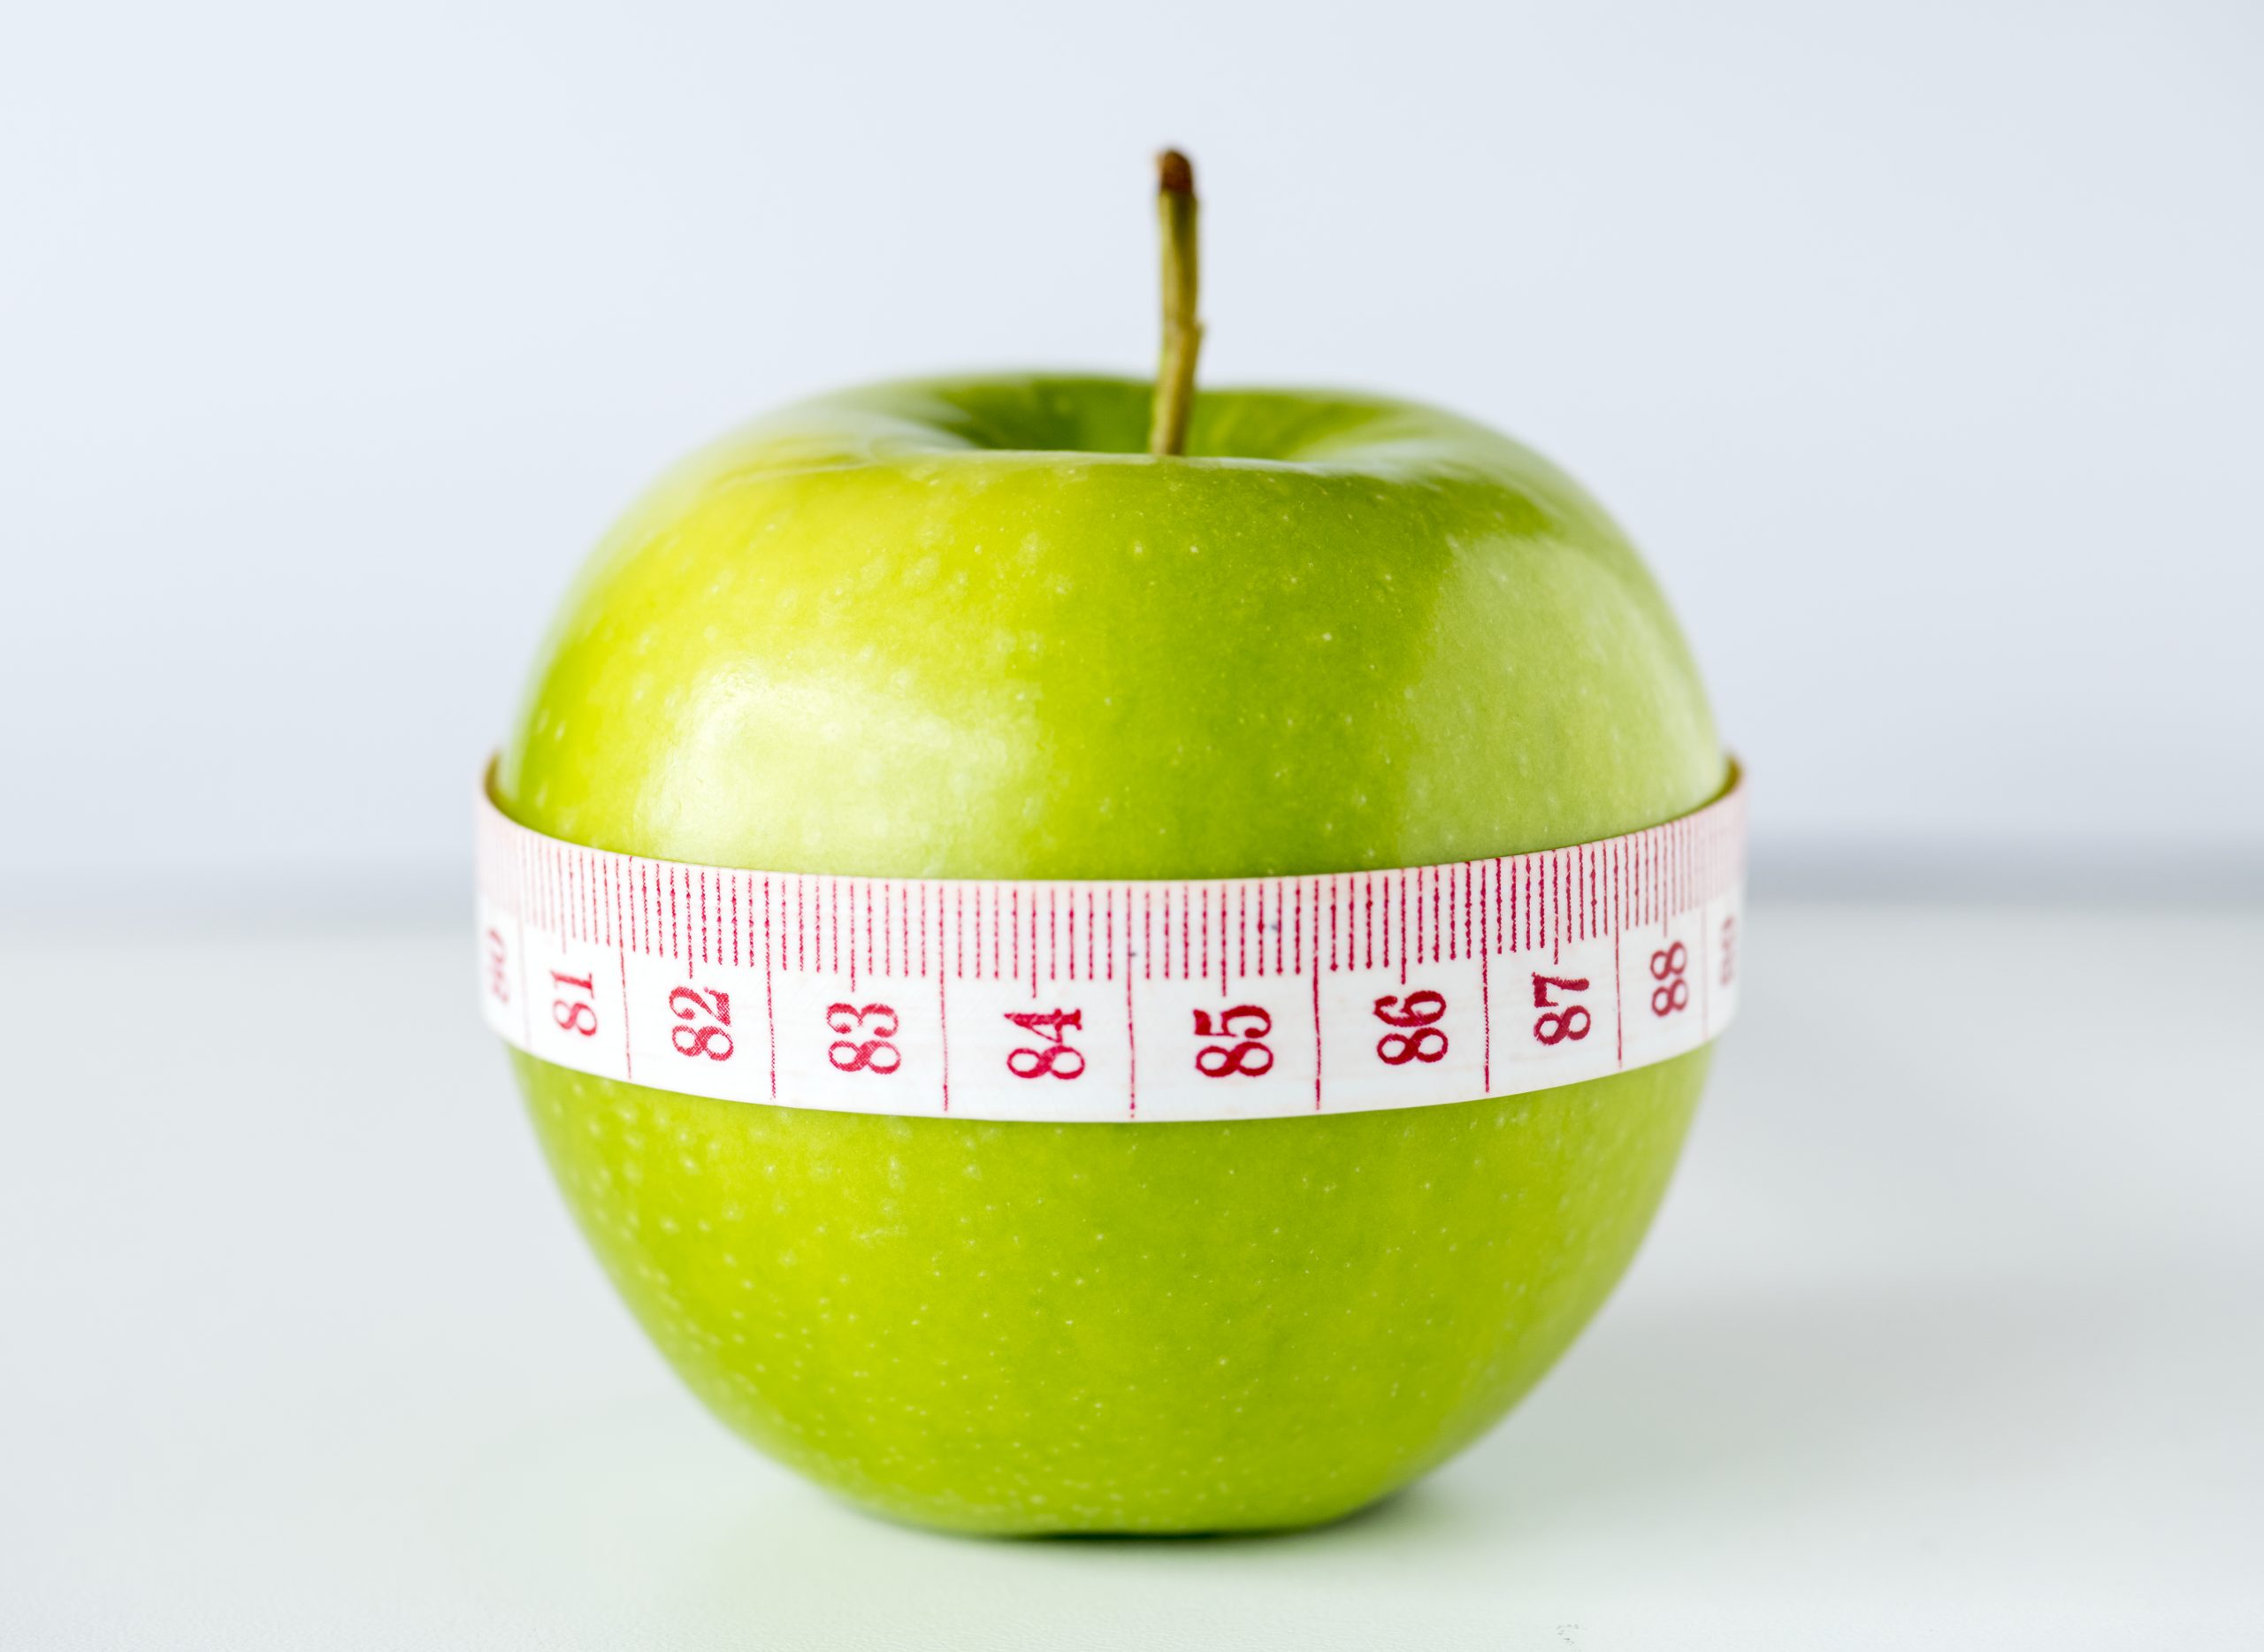 οι 5 συχνότεροι λόγοι που παρατάμε τη διατροφή μαs 34 scaled - Οι 5 Συχνότεροι λόγοι που παρατάμε τη διατροφή μας!